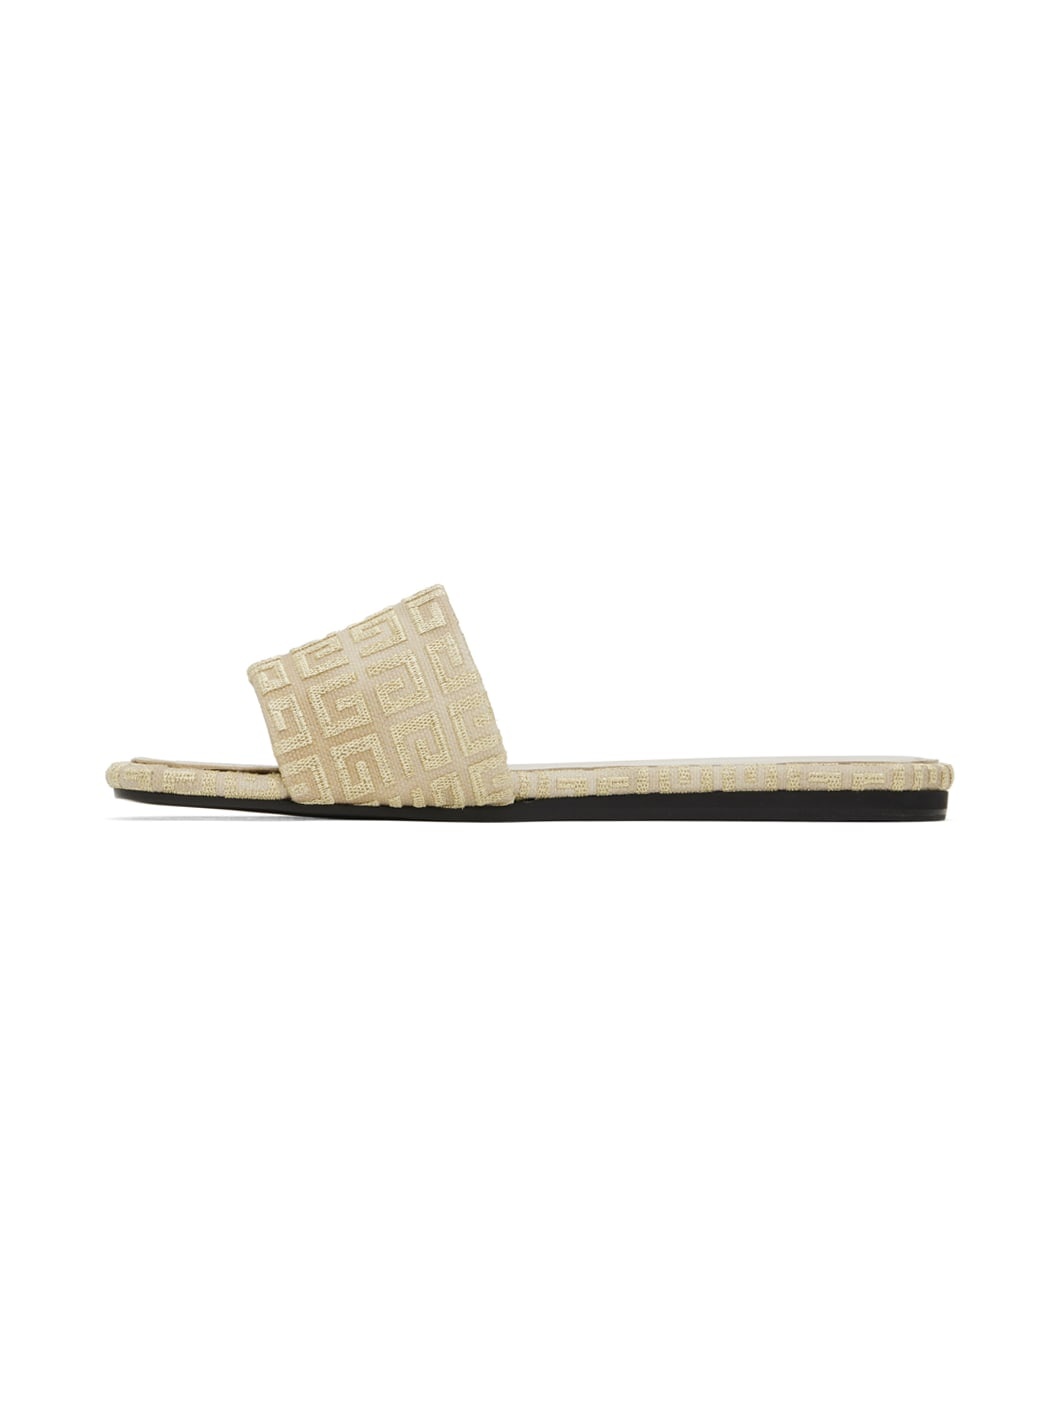 Beige & Gold 4G Sandals - 3